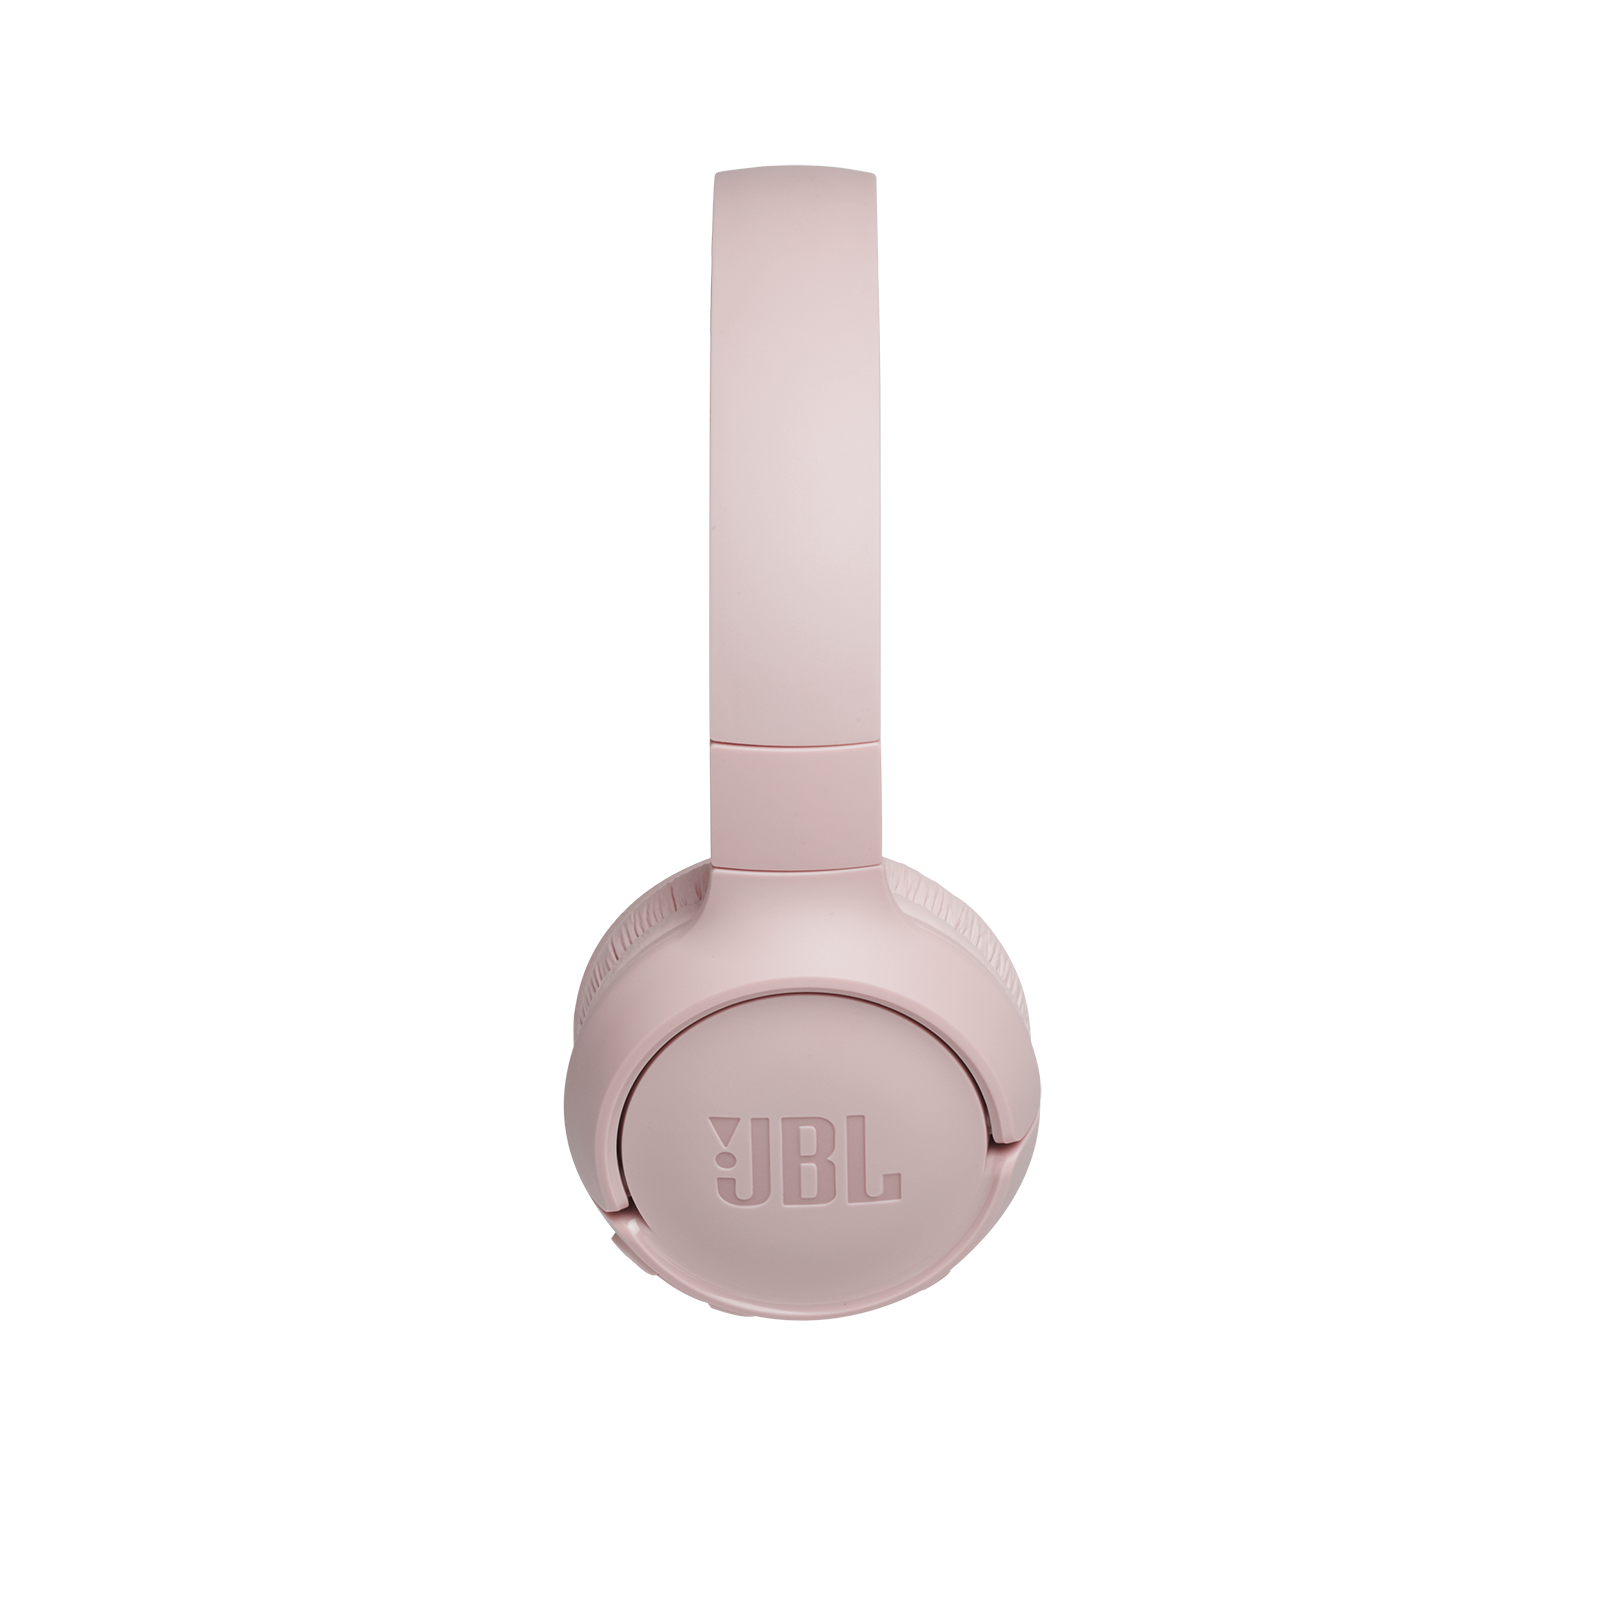 JBL Tune 500BT - Pink - Wireless on-ear headphones - Left